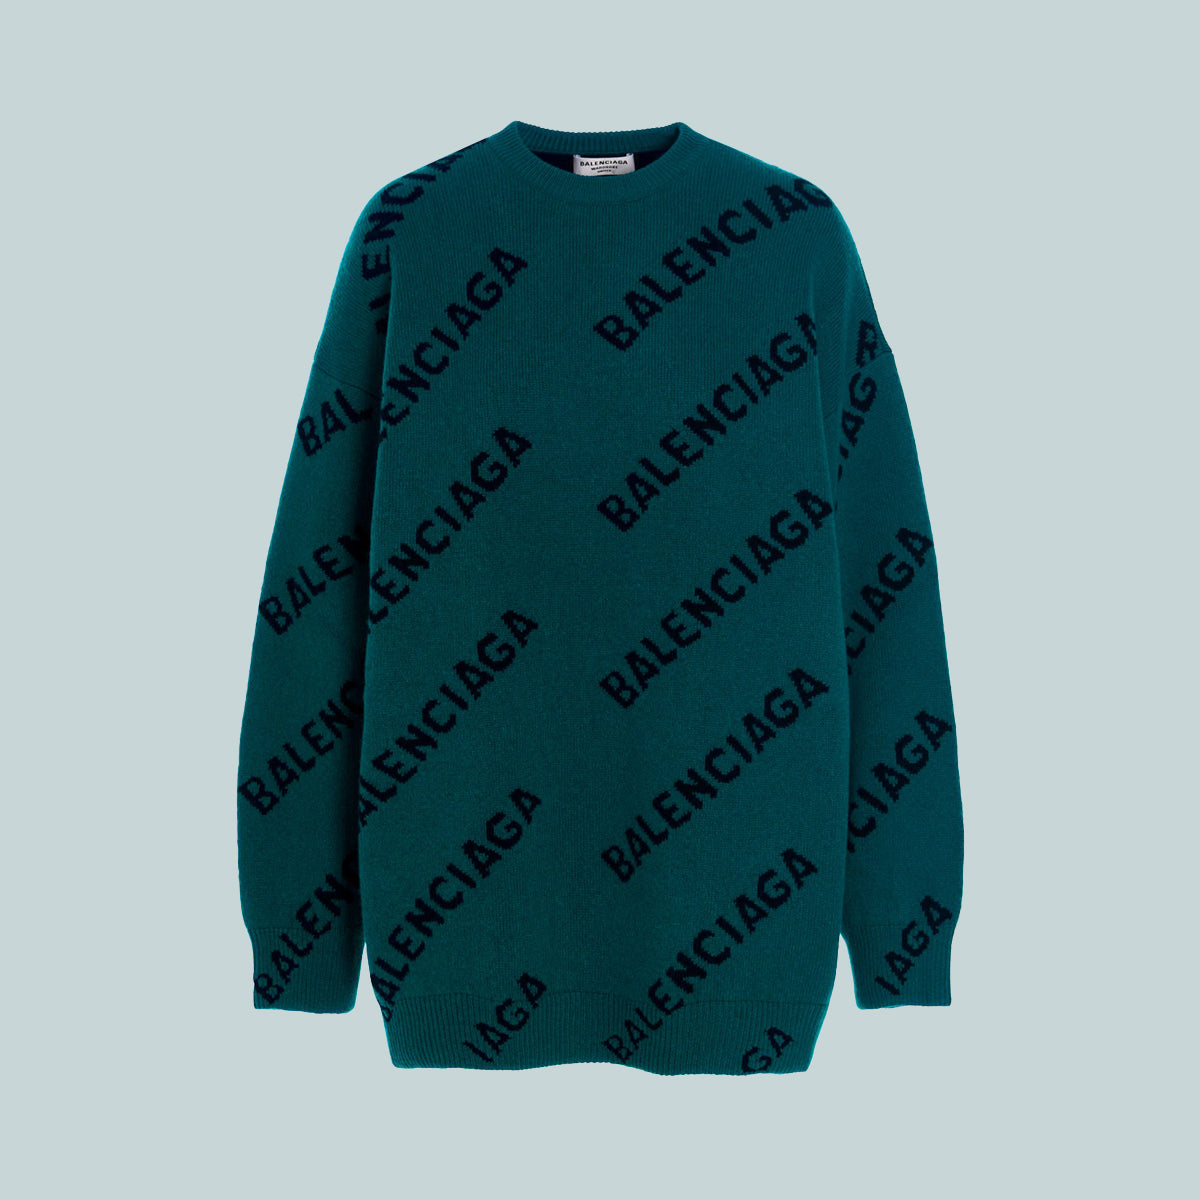 Balenciaga all over logo sweater